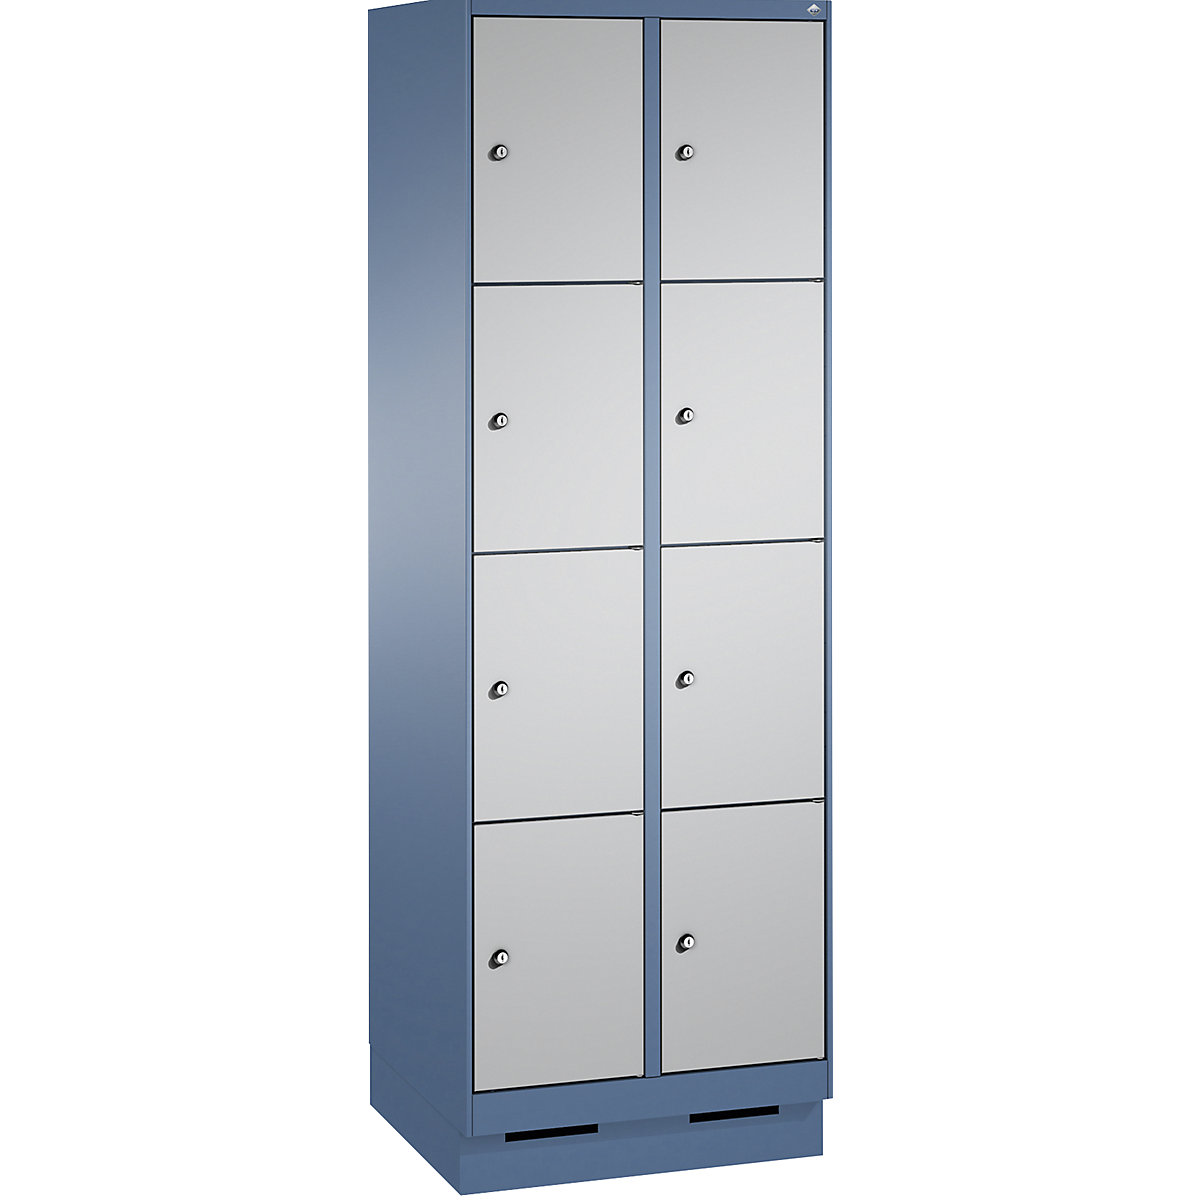 EVOLO locker unit, with plinth – C+P, 2 compartments, 4 shelf compartments each, compartment width 300 mm, distant blue / white aluminium-6